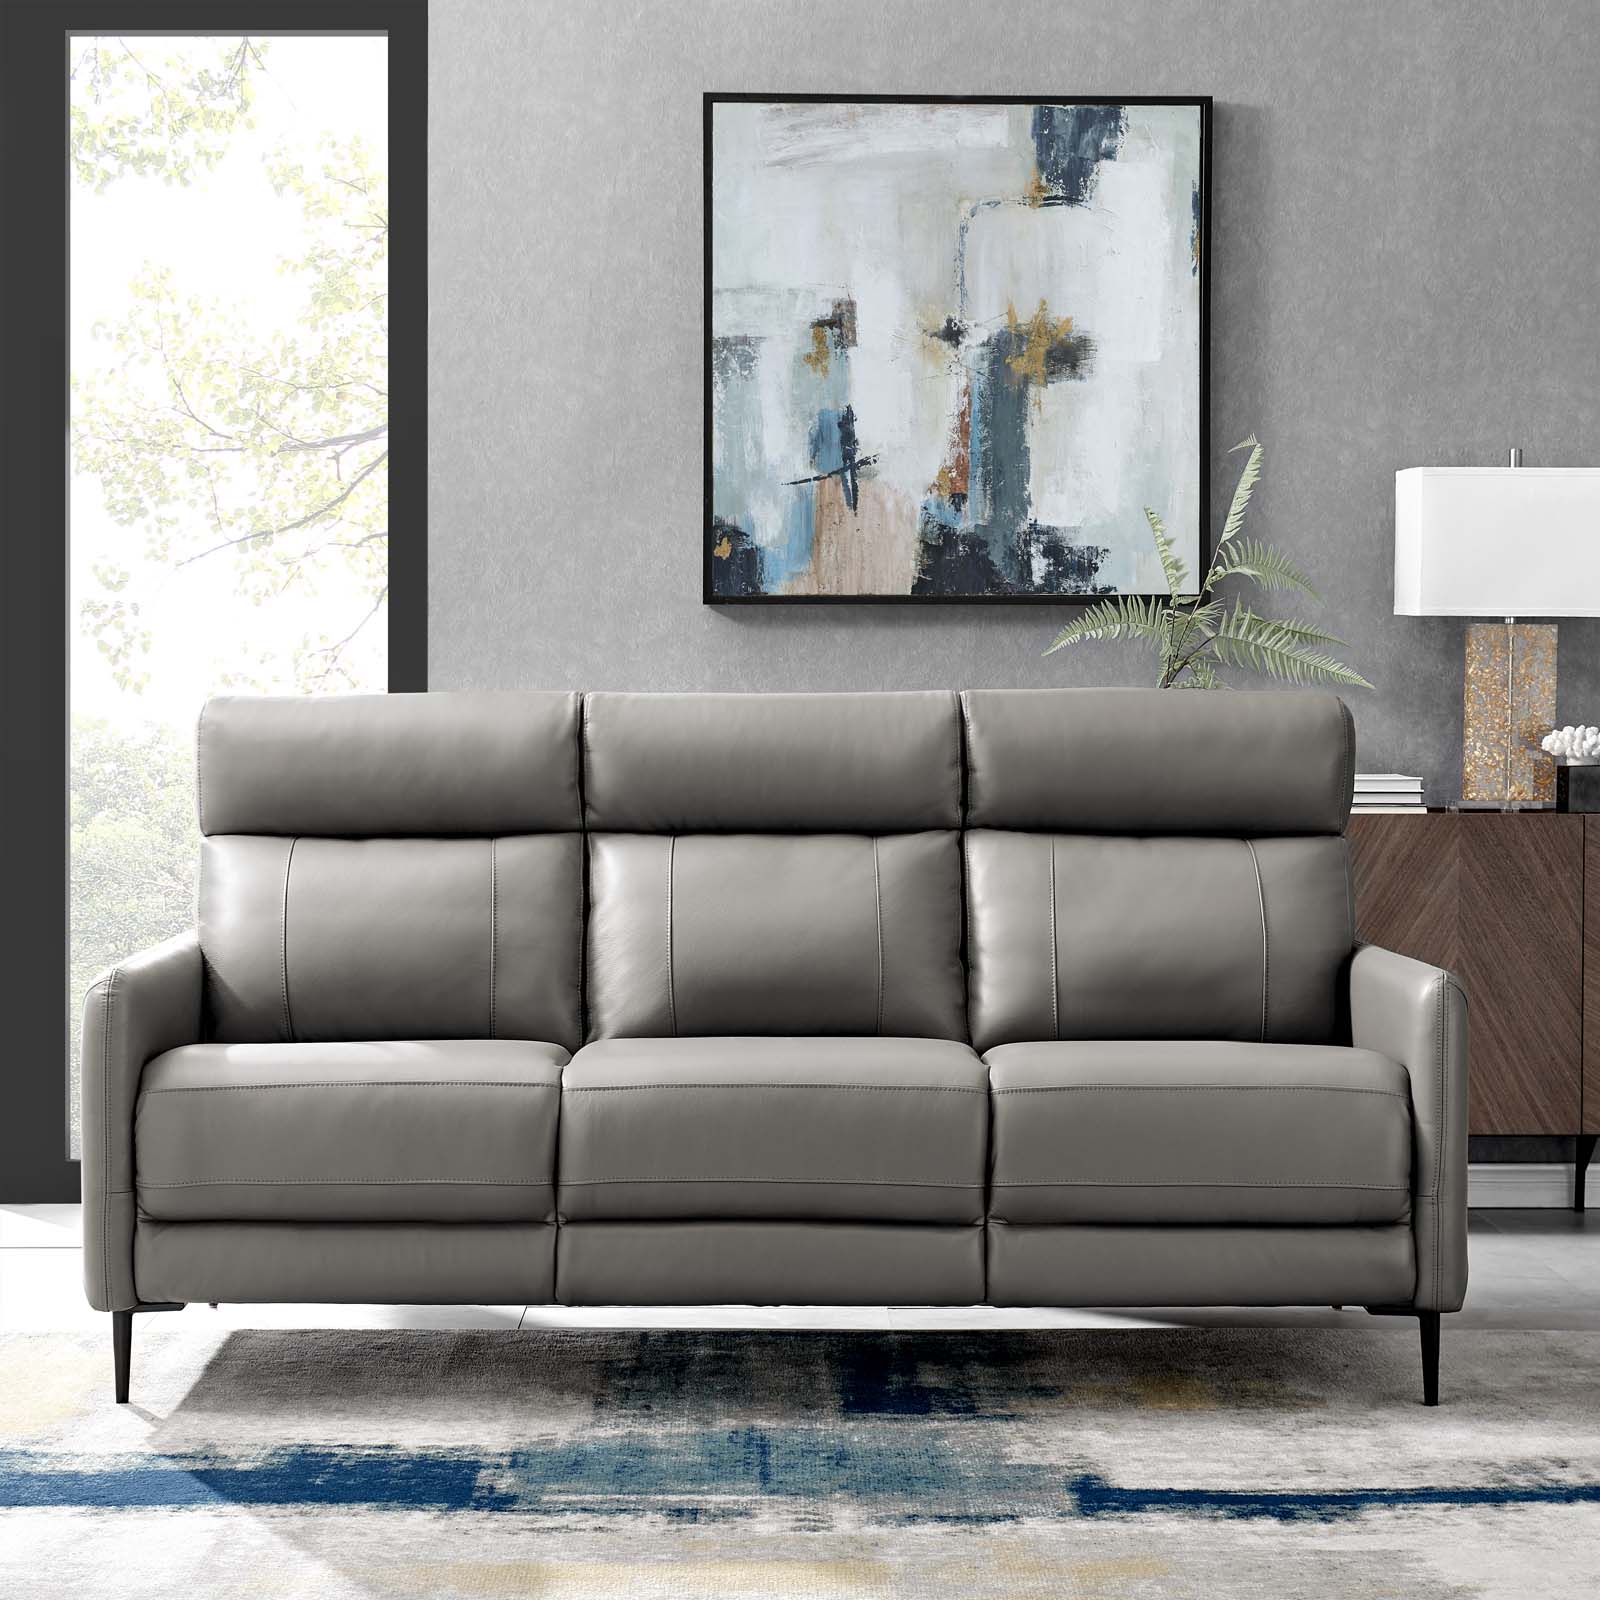 Huxley Leather Sofa - East Shore Modern Home Furnishings